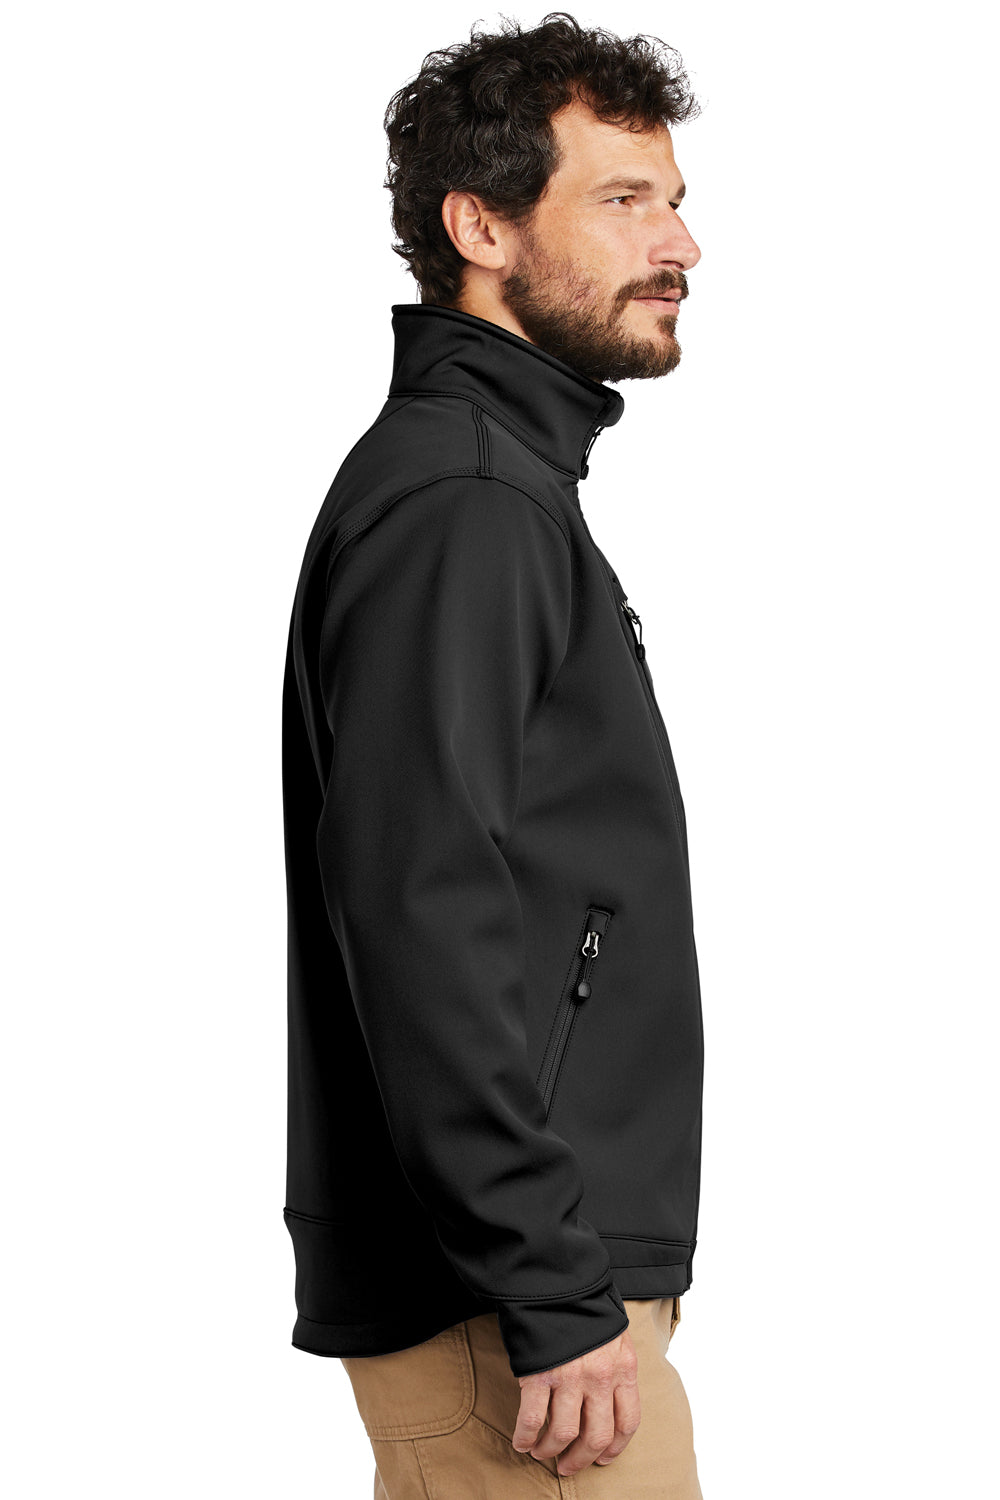 Carhartt CT102199 Mens Crowley Wind & Water Resistant Full Zip Jacket Black Model Side